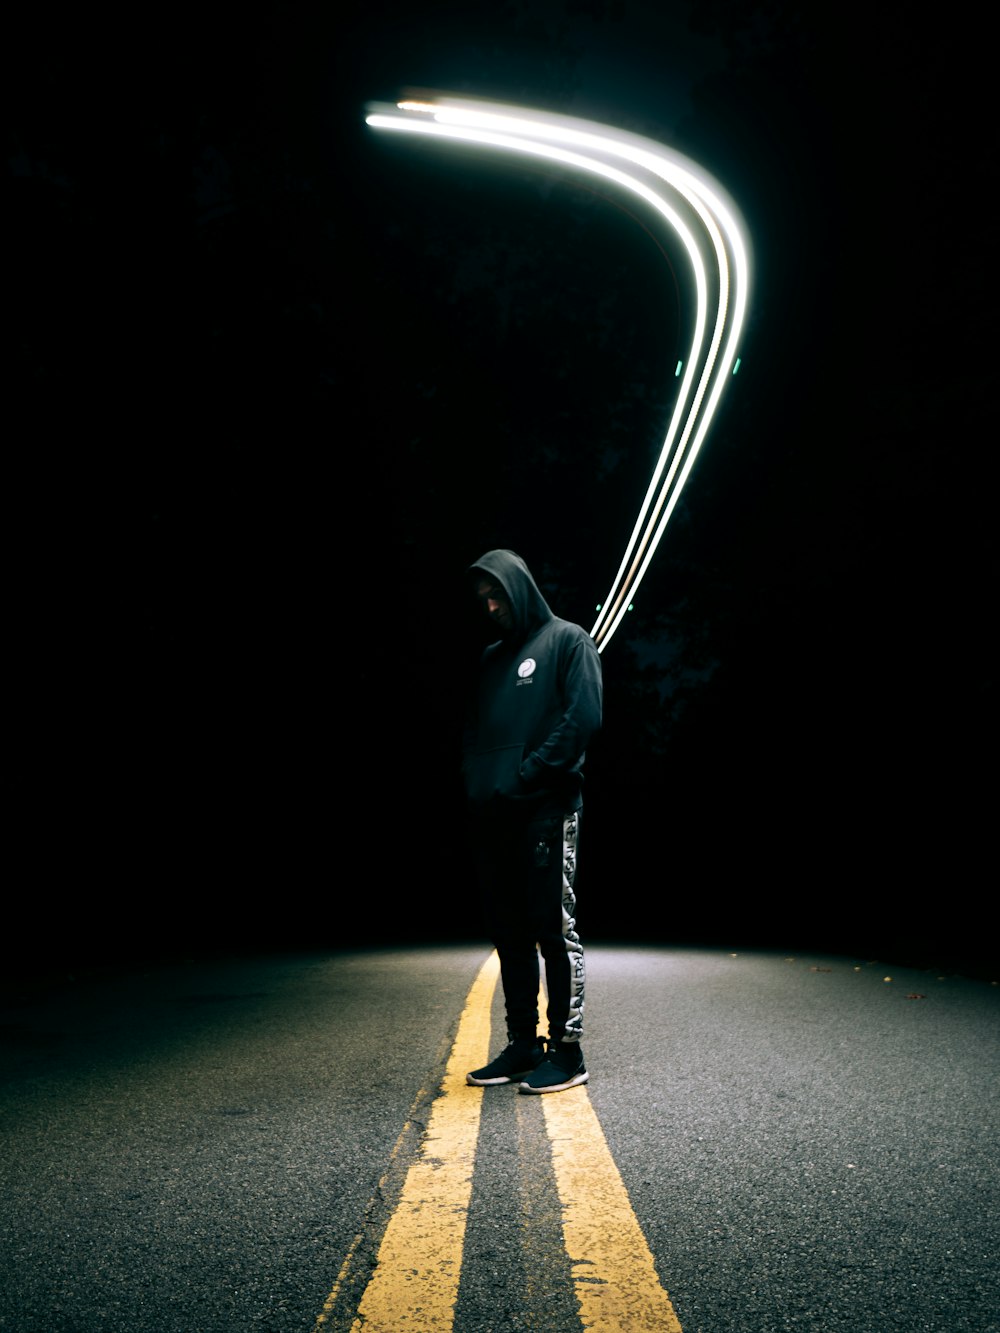 터널에 서 있는 검은 재킷을 입은 남자